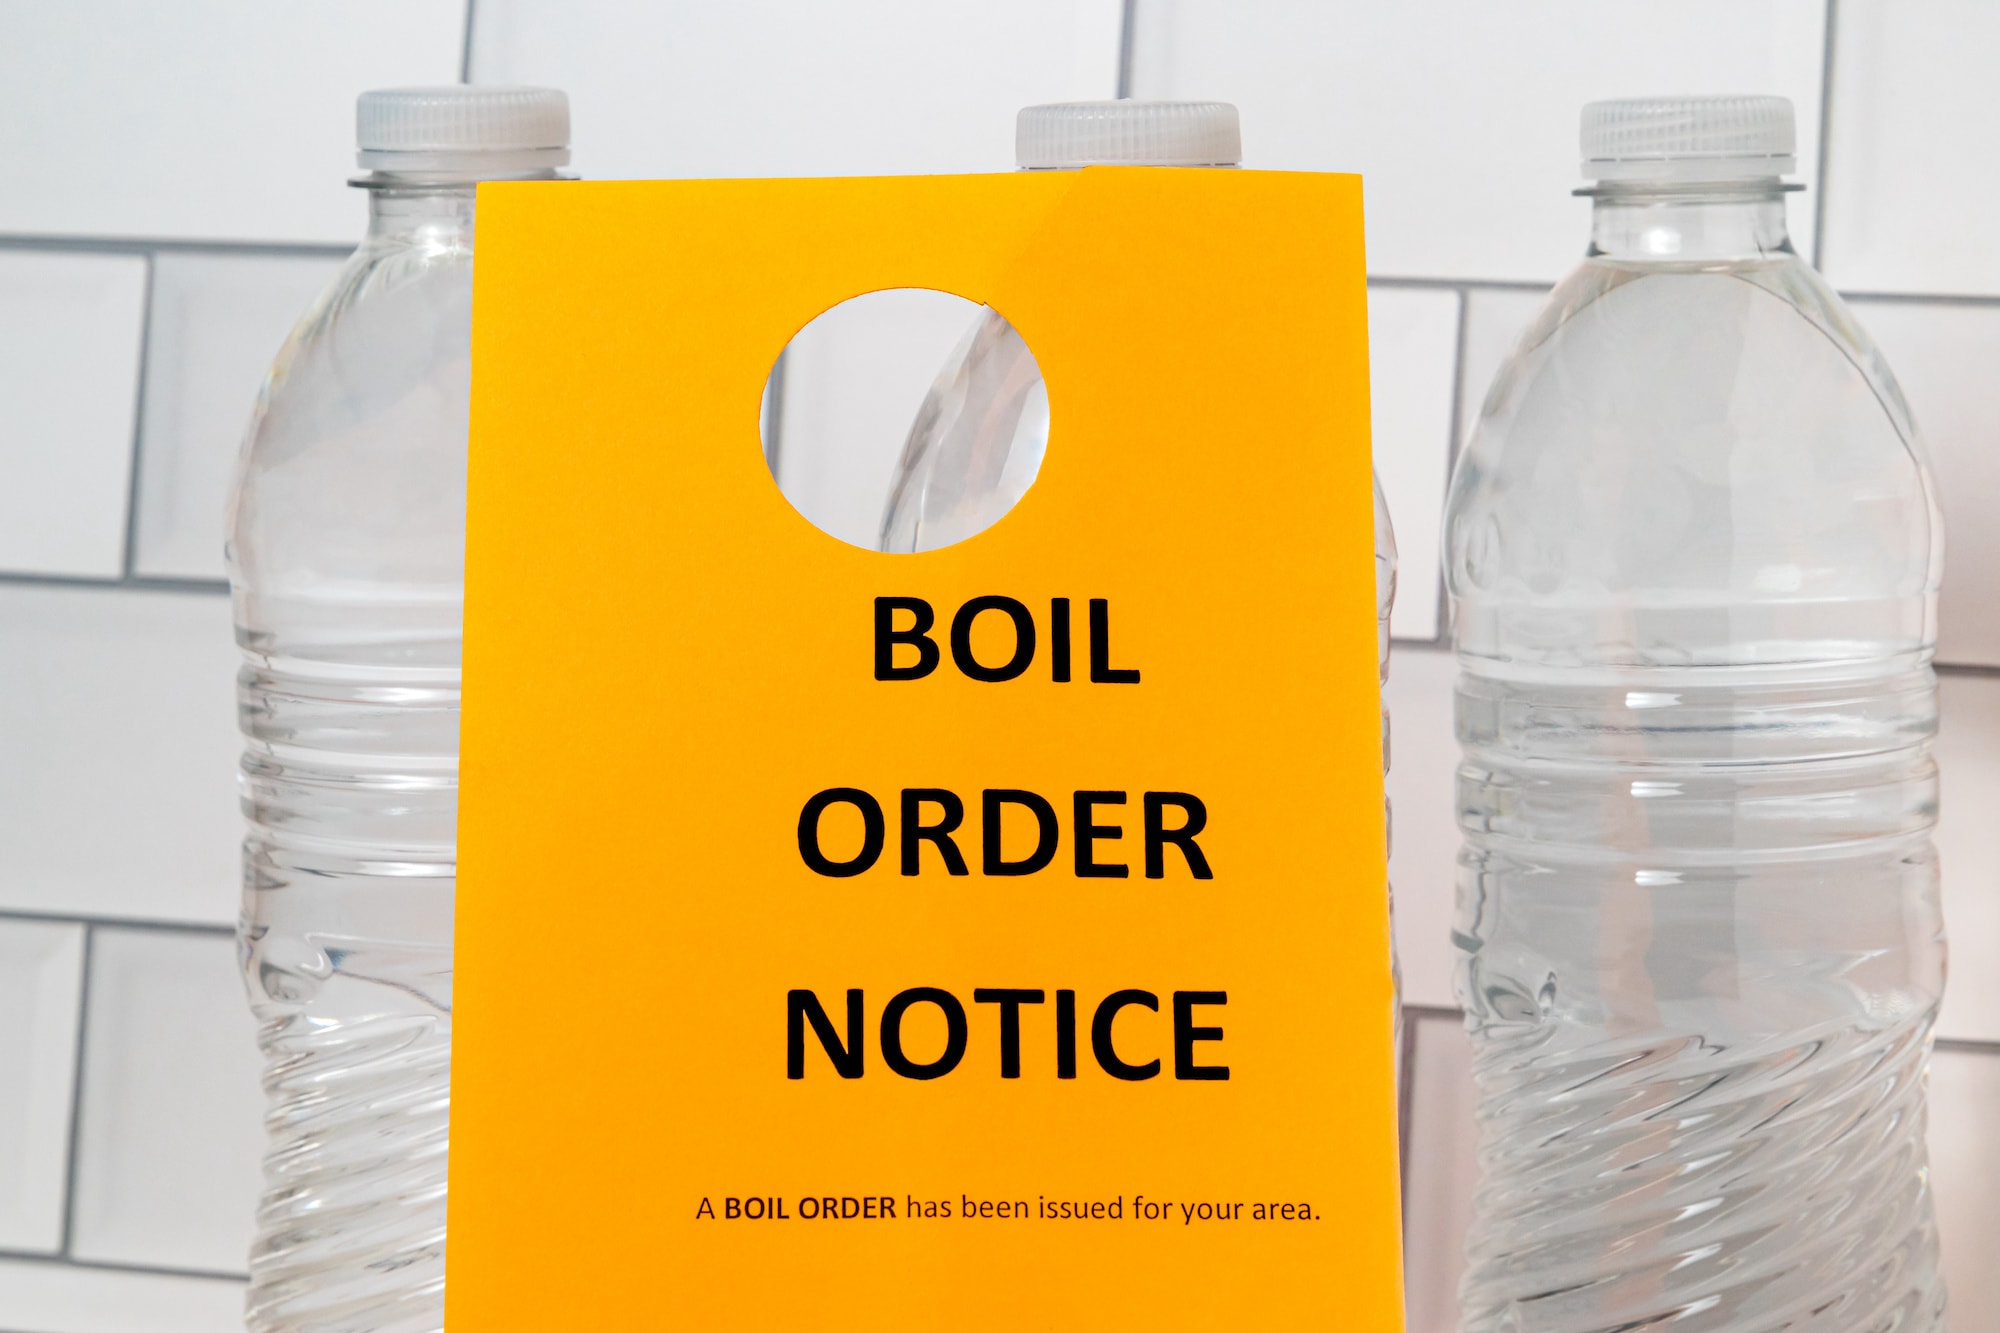 Boil water notice doorhanger